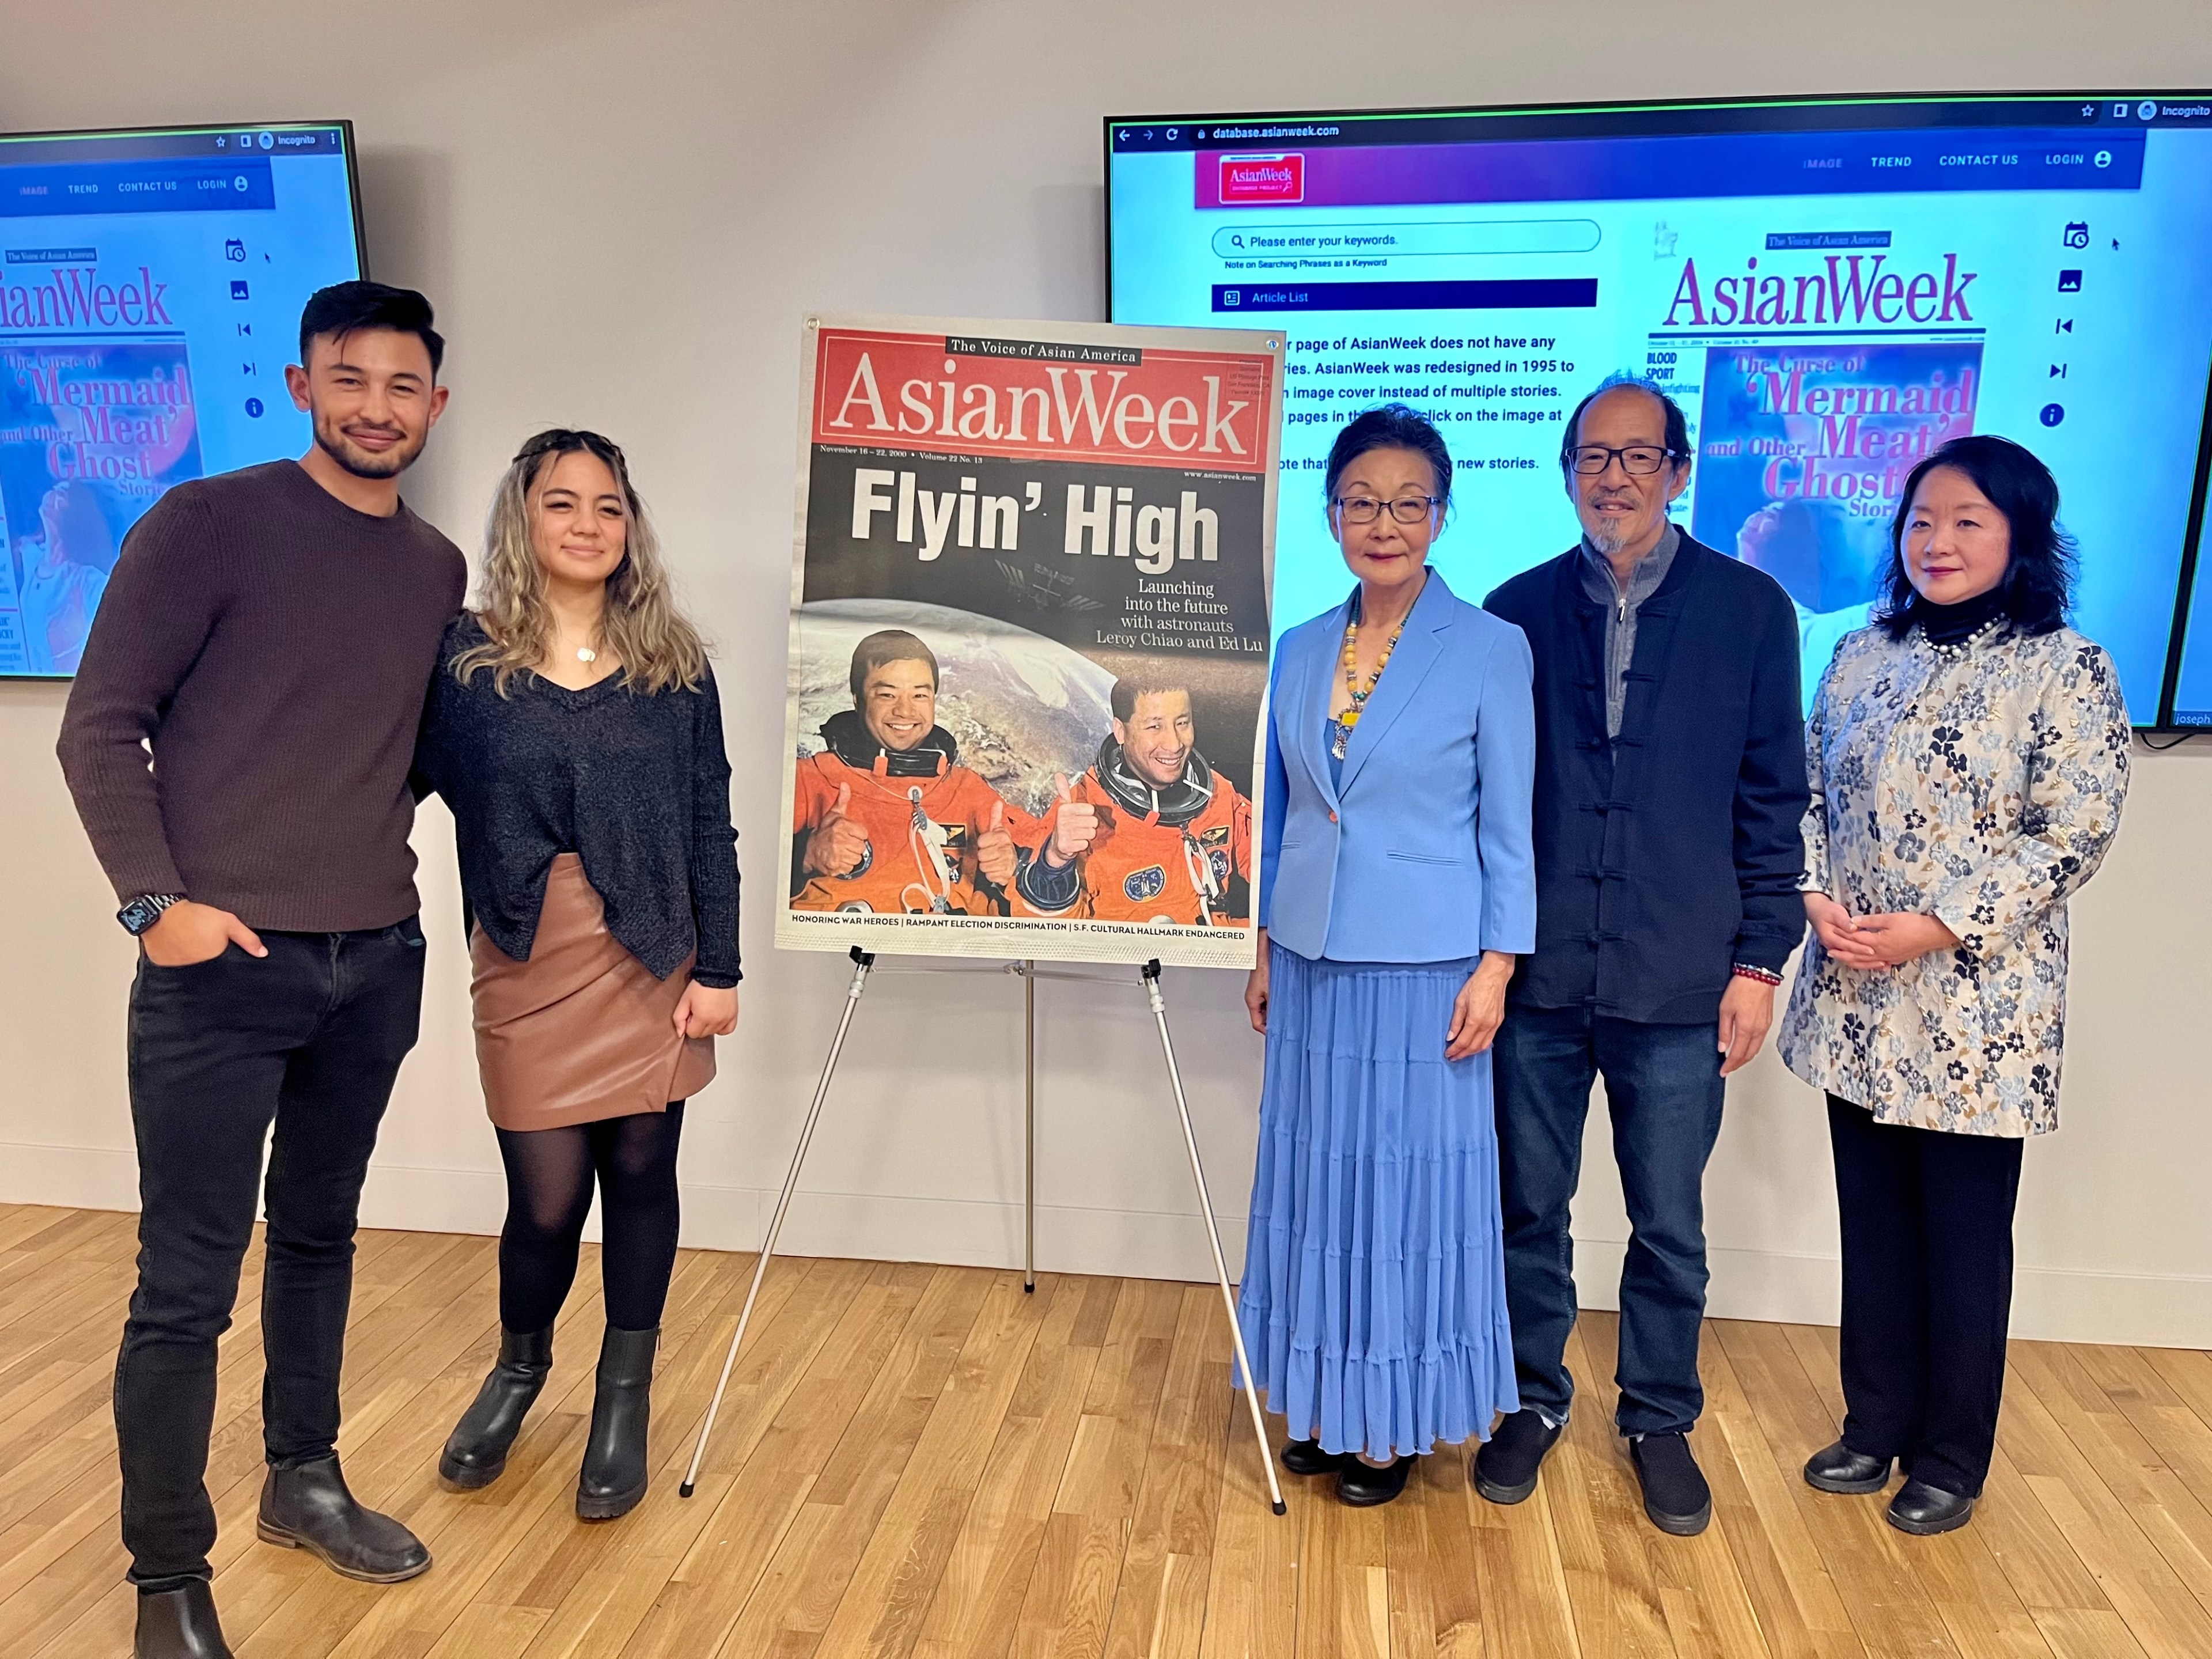 AsianWeek, San Francisco’s Pioneering Asian American Newspaper, Has Been Reborn Online